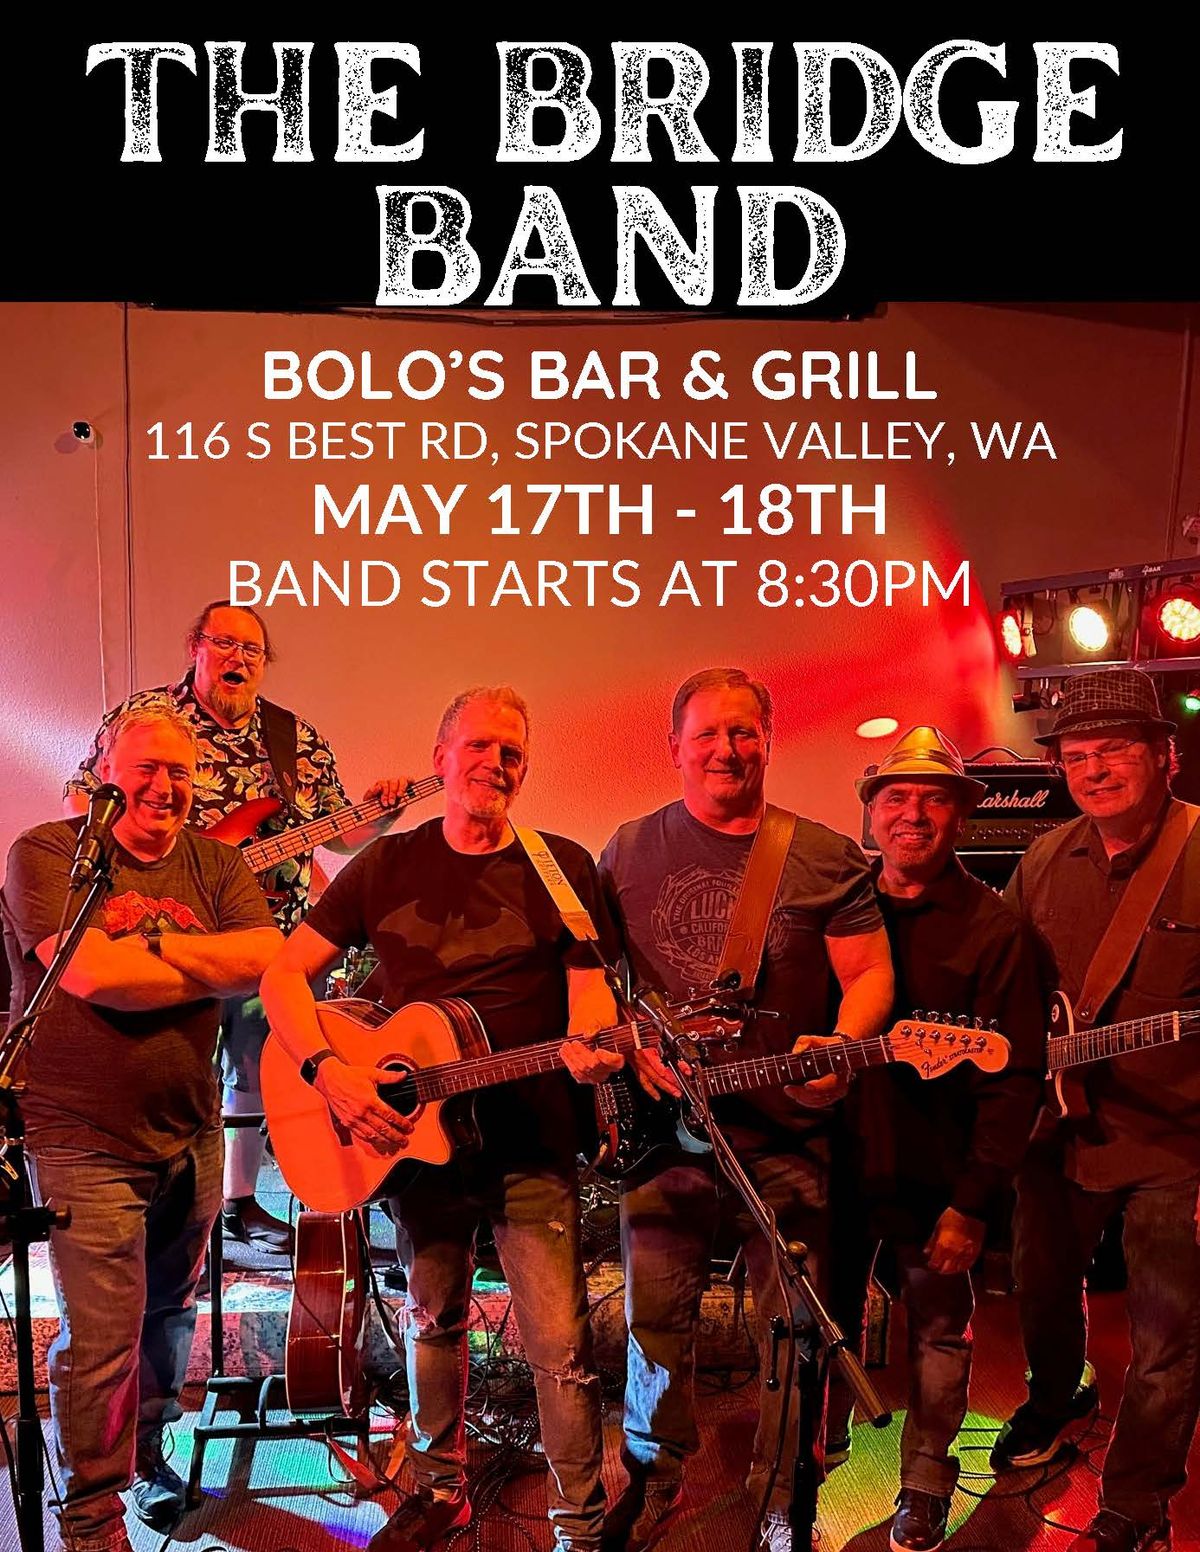 The Bridge Band at Bolo's!